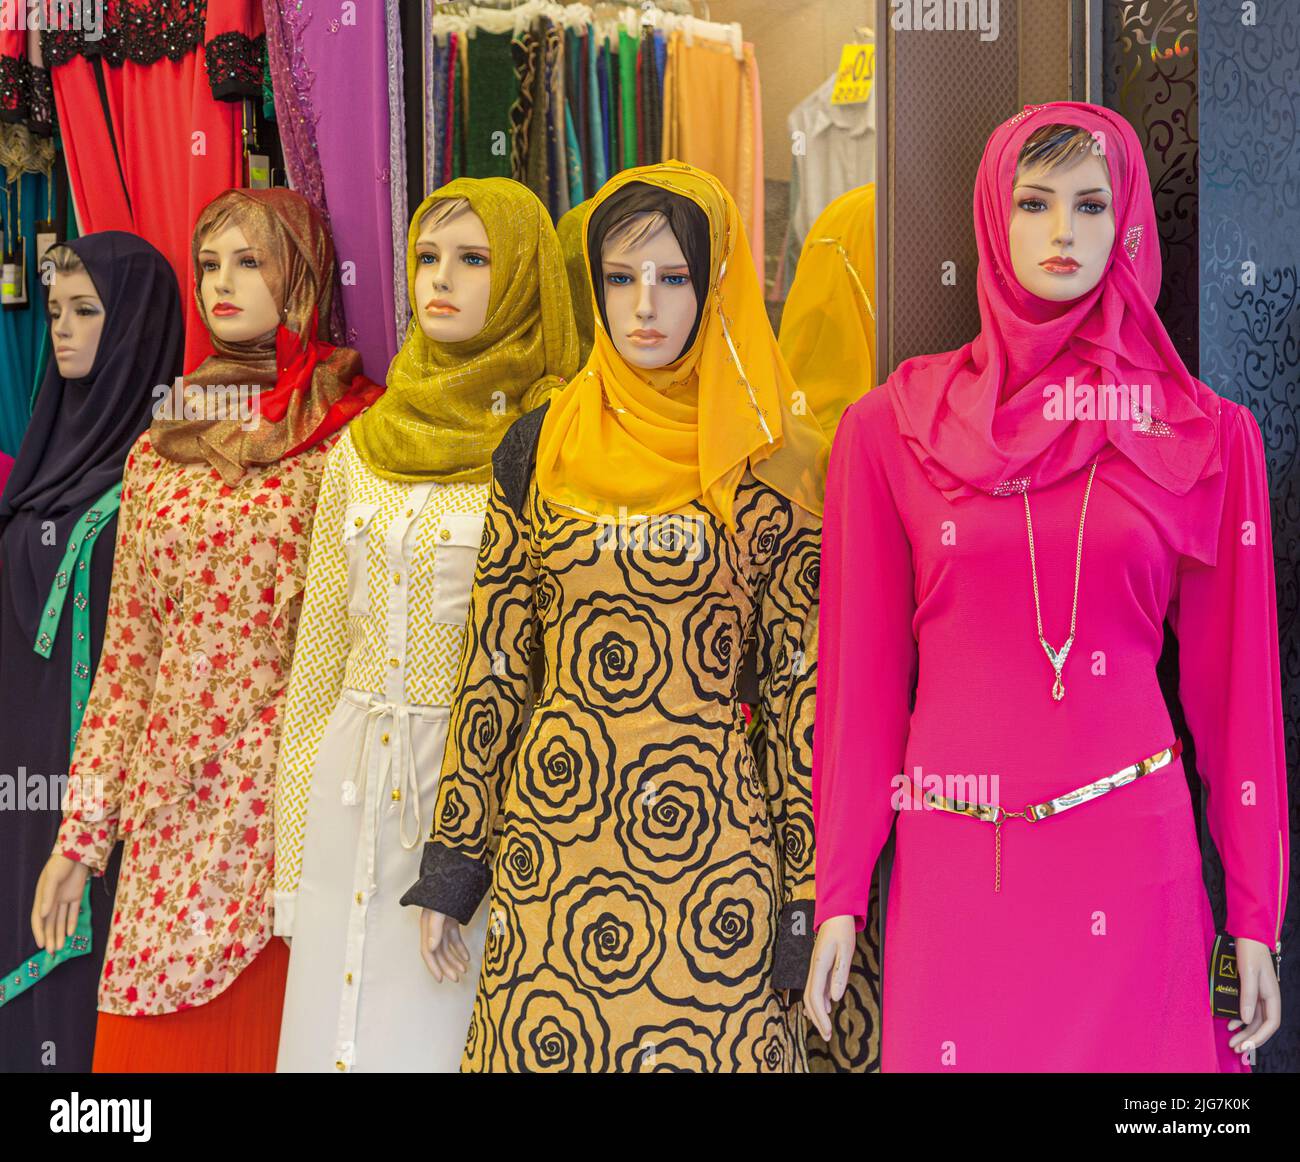 Manichini di fronte al negozio che espone la gamma di abbigliamento femminile musulmano. Repubblica di Singapore Foto Stock